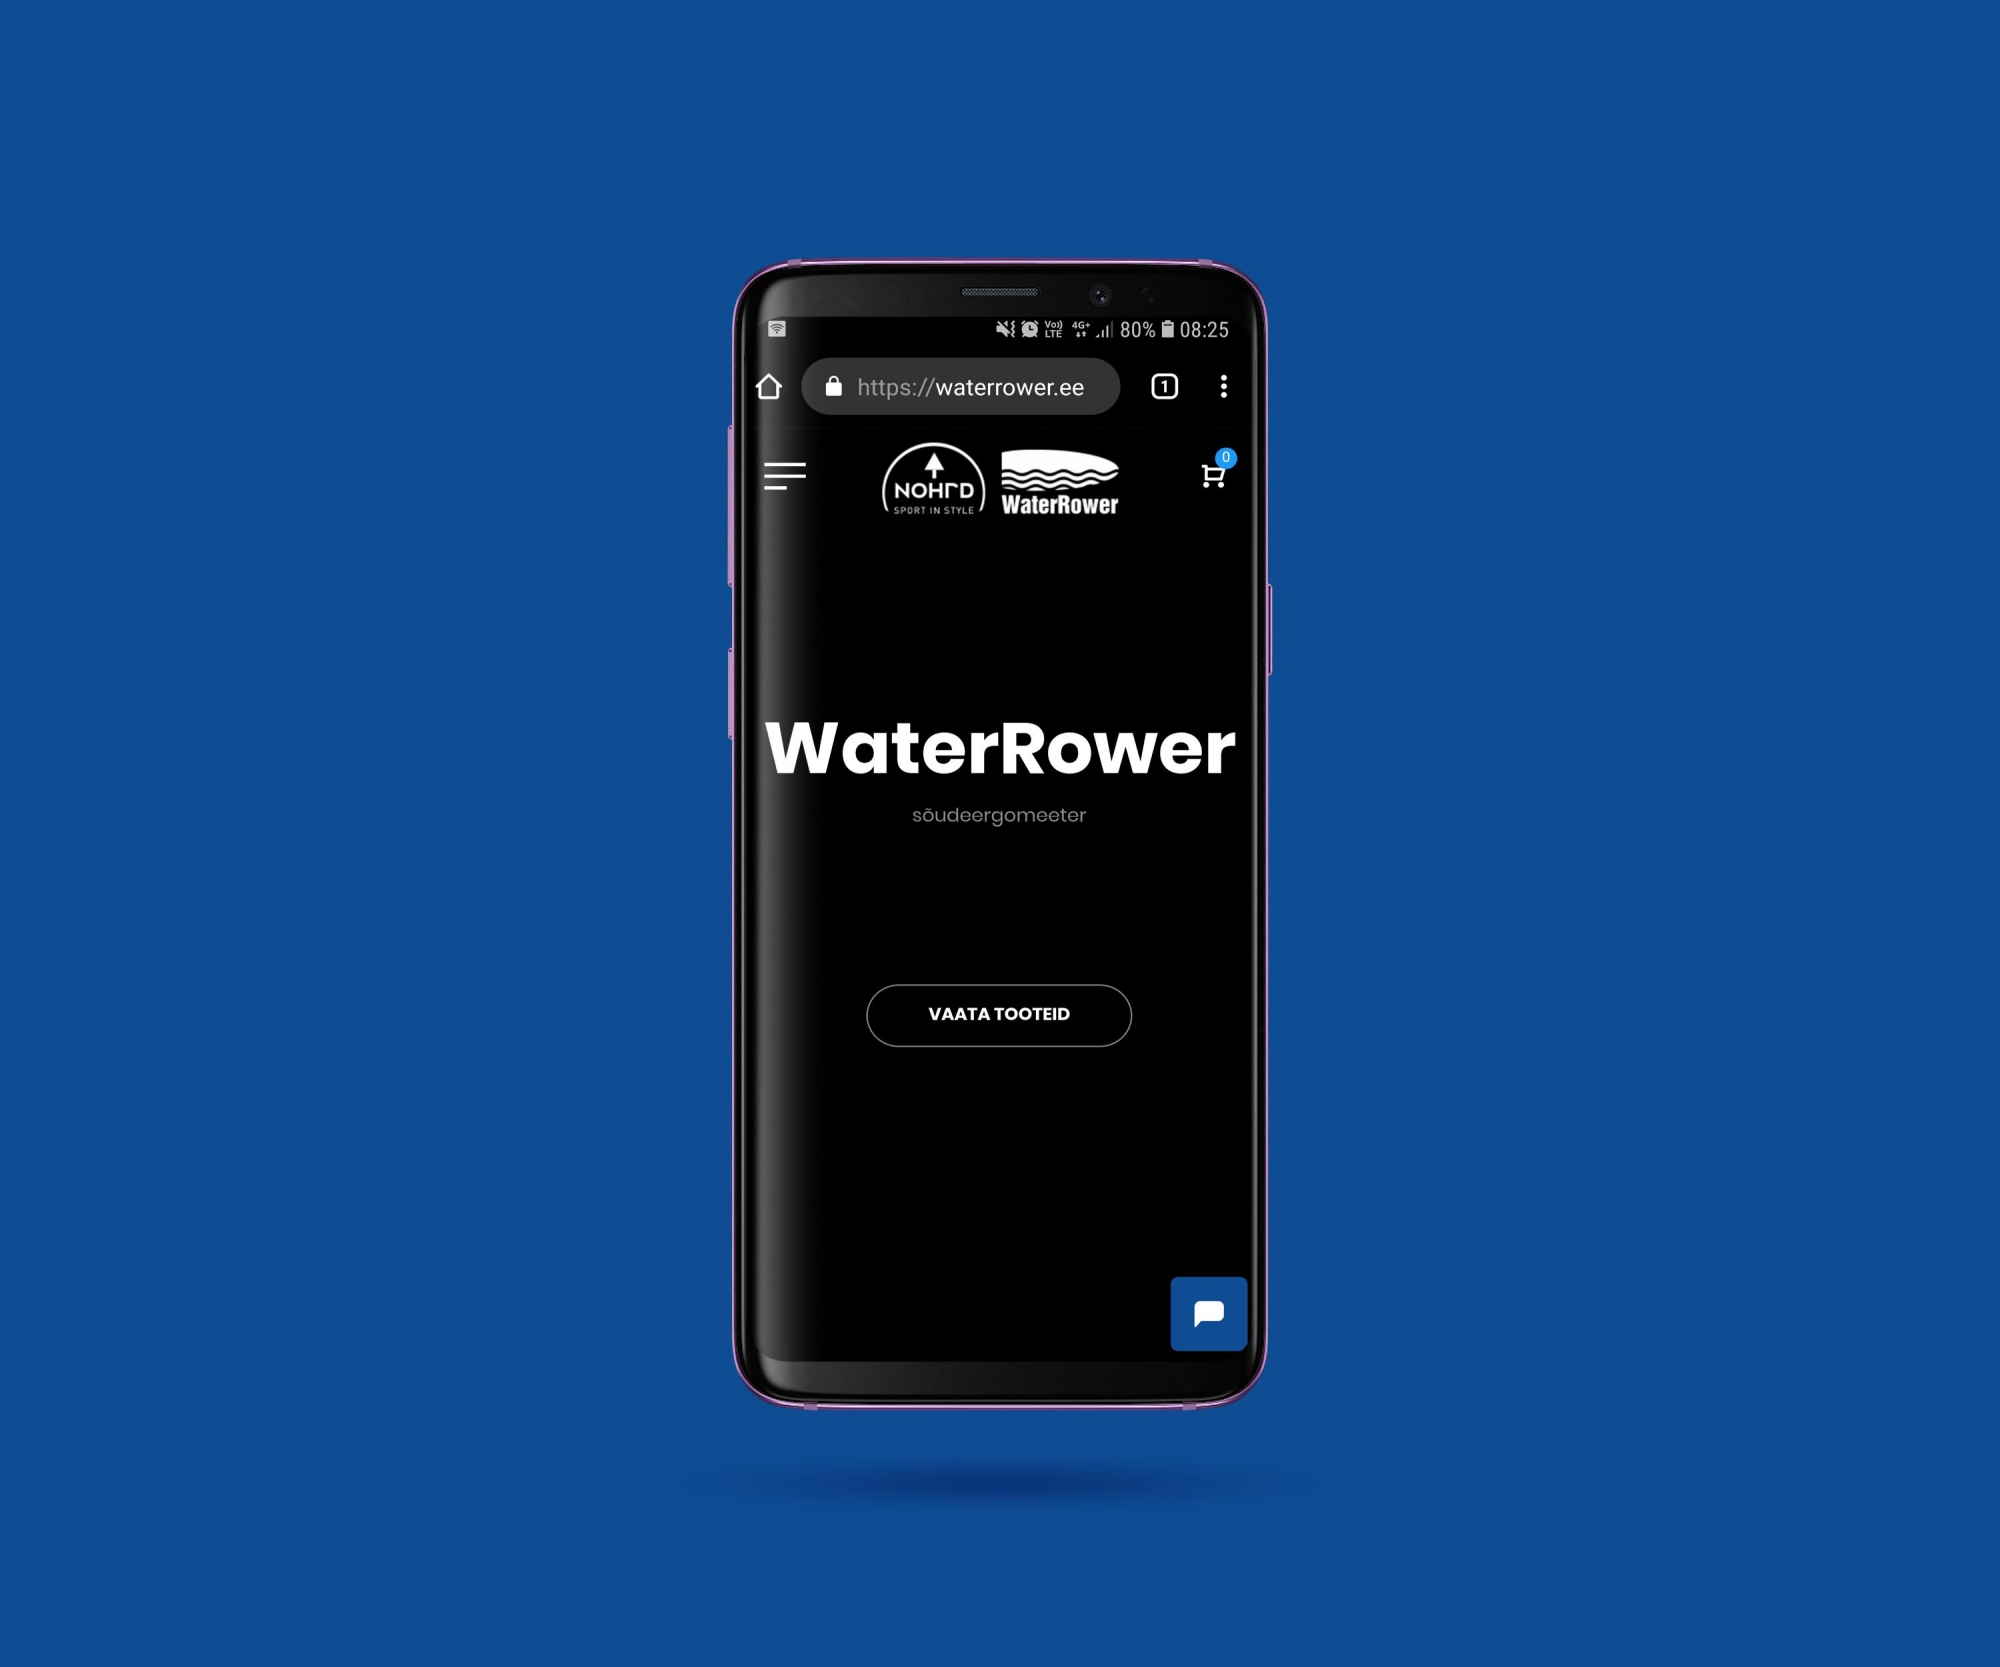 Viimaks on avatud uus WaterRower ja NOHrD toodete koduleht ja e-pood. Vana koduleht oli pisut…
The post E-pood on avatud! appeared first on Waterrower.